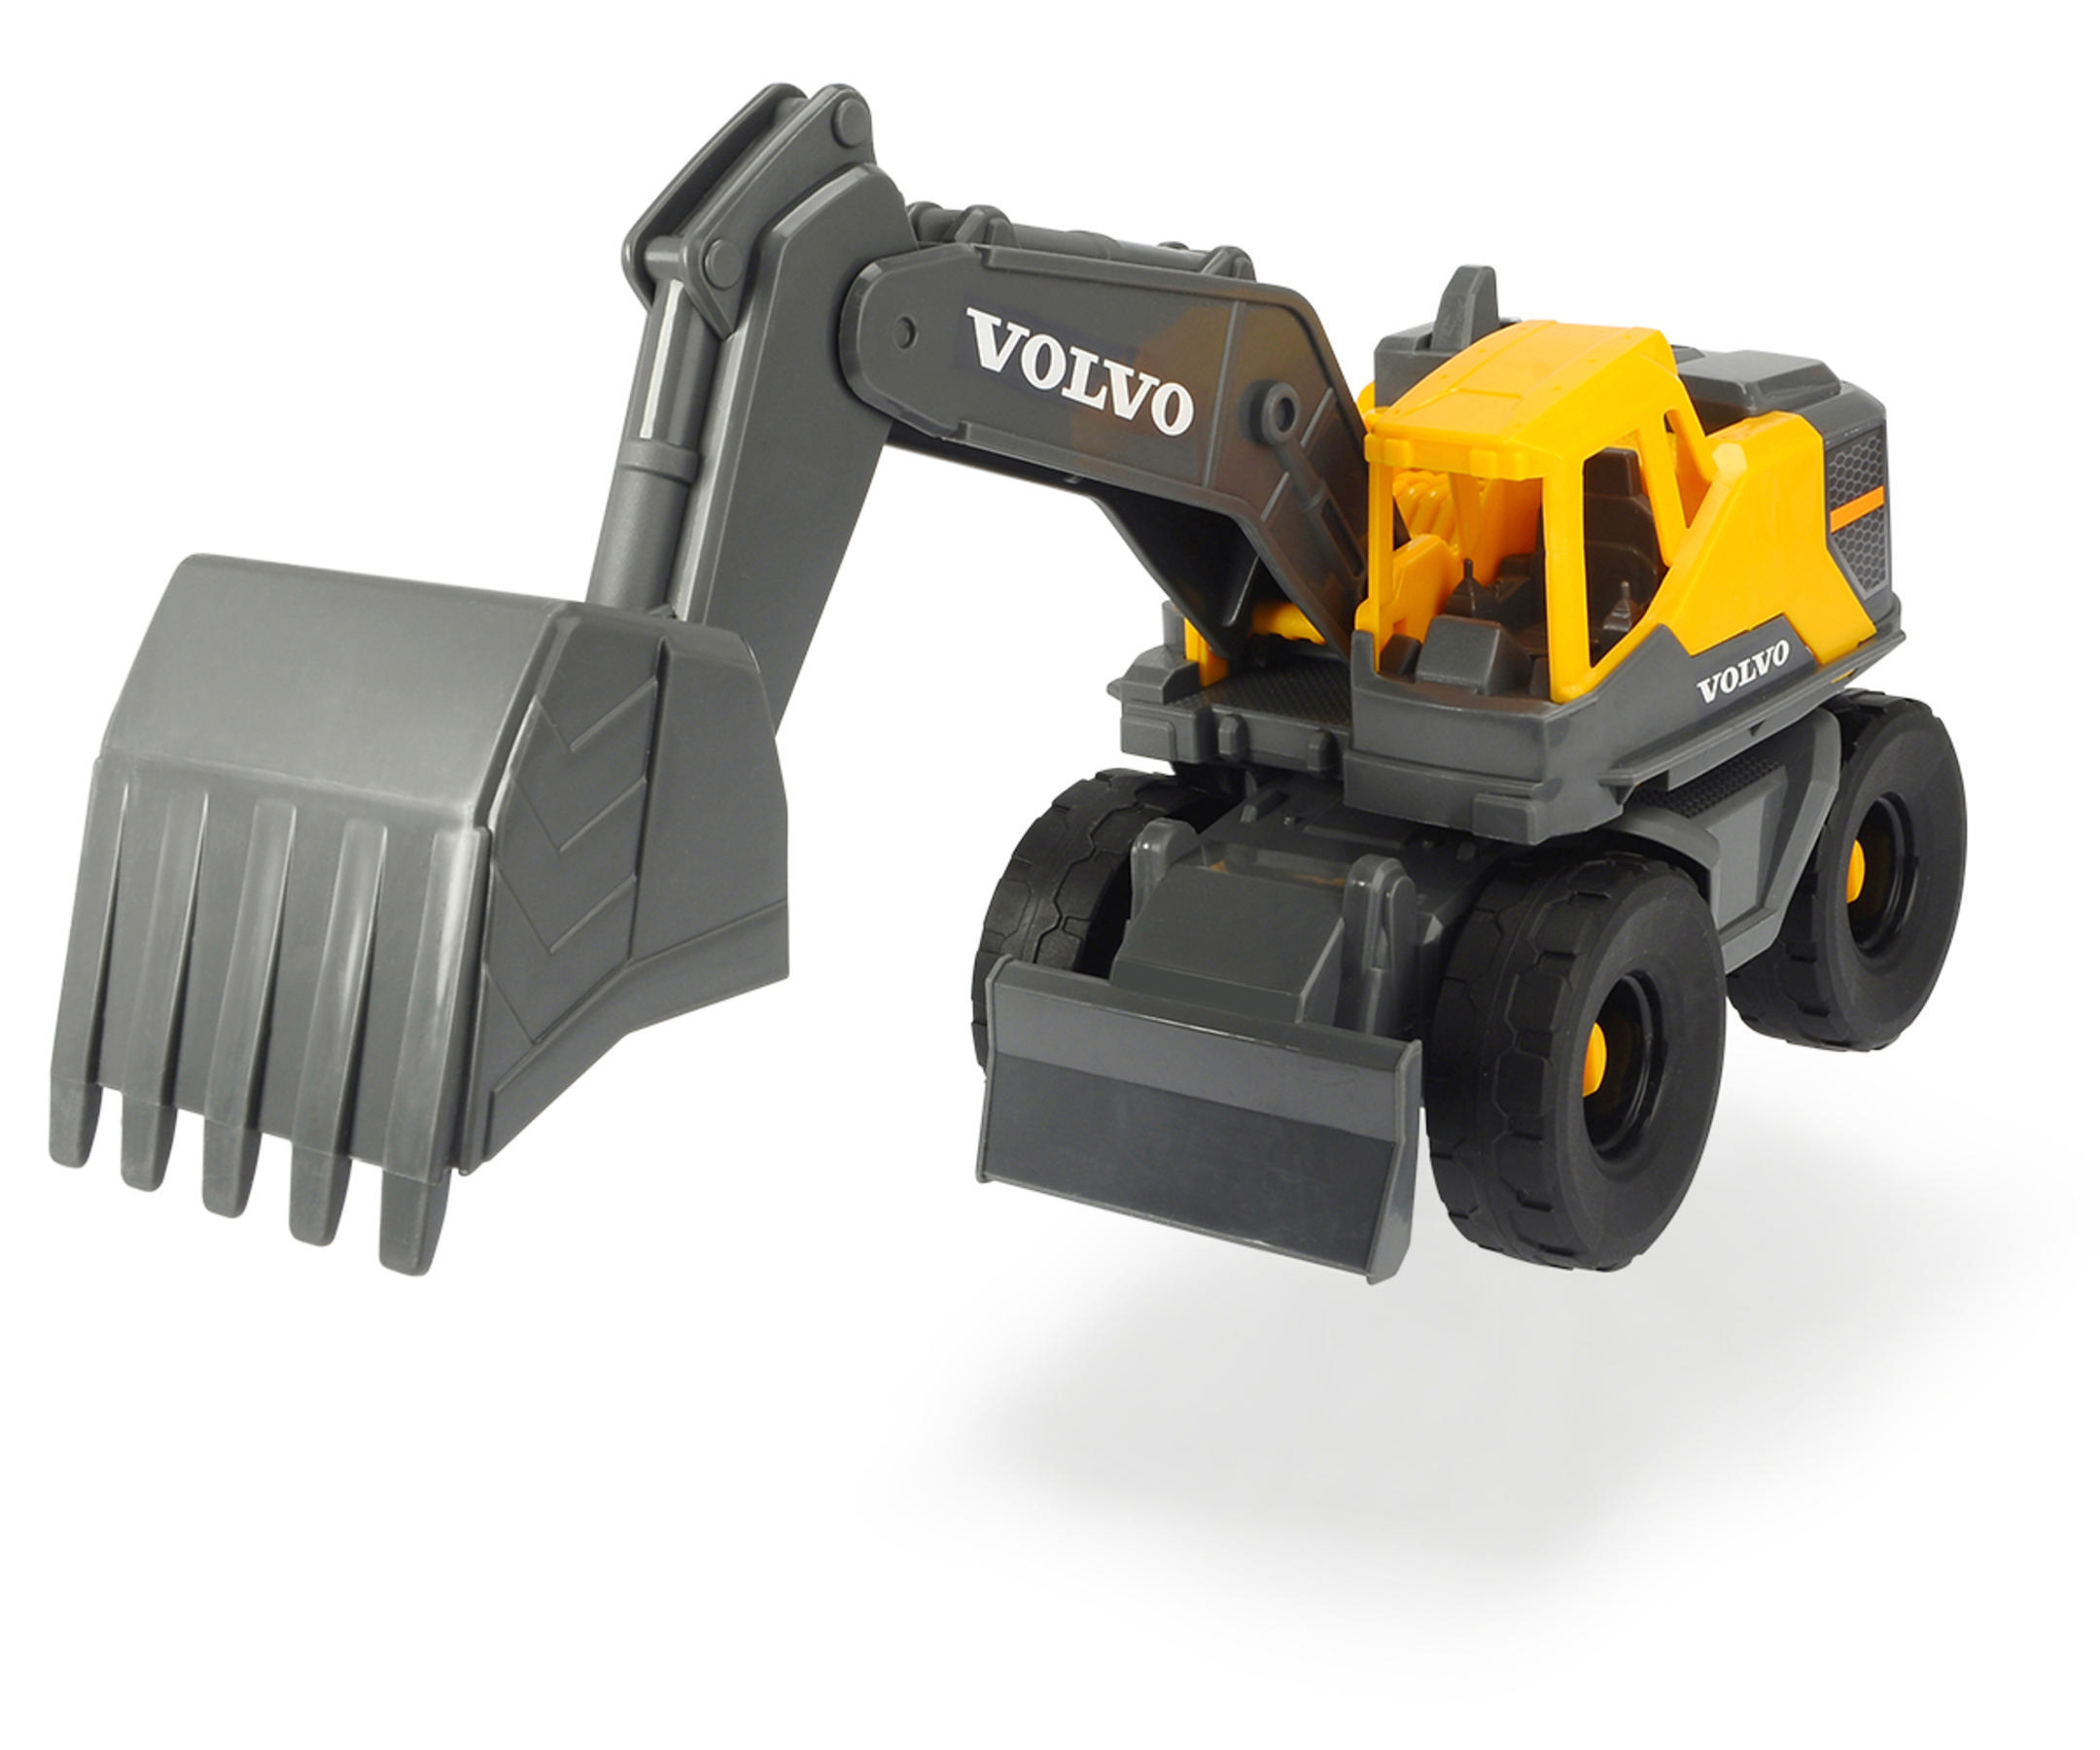 26 Spielzeugbagger Länge: DICKIE-TOYS On-site Volvo mit Spielzeugauto Excavator, Gelb/Grau cm Freilauf,